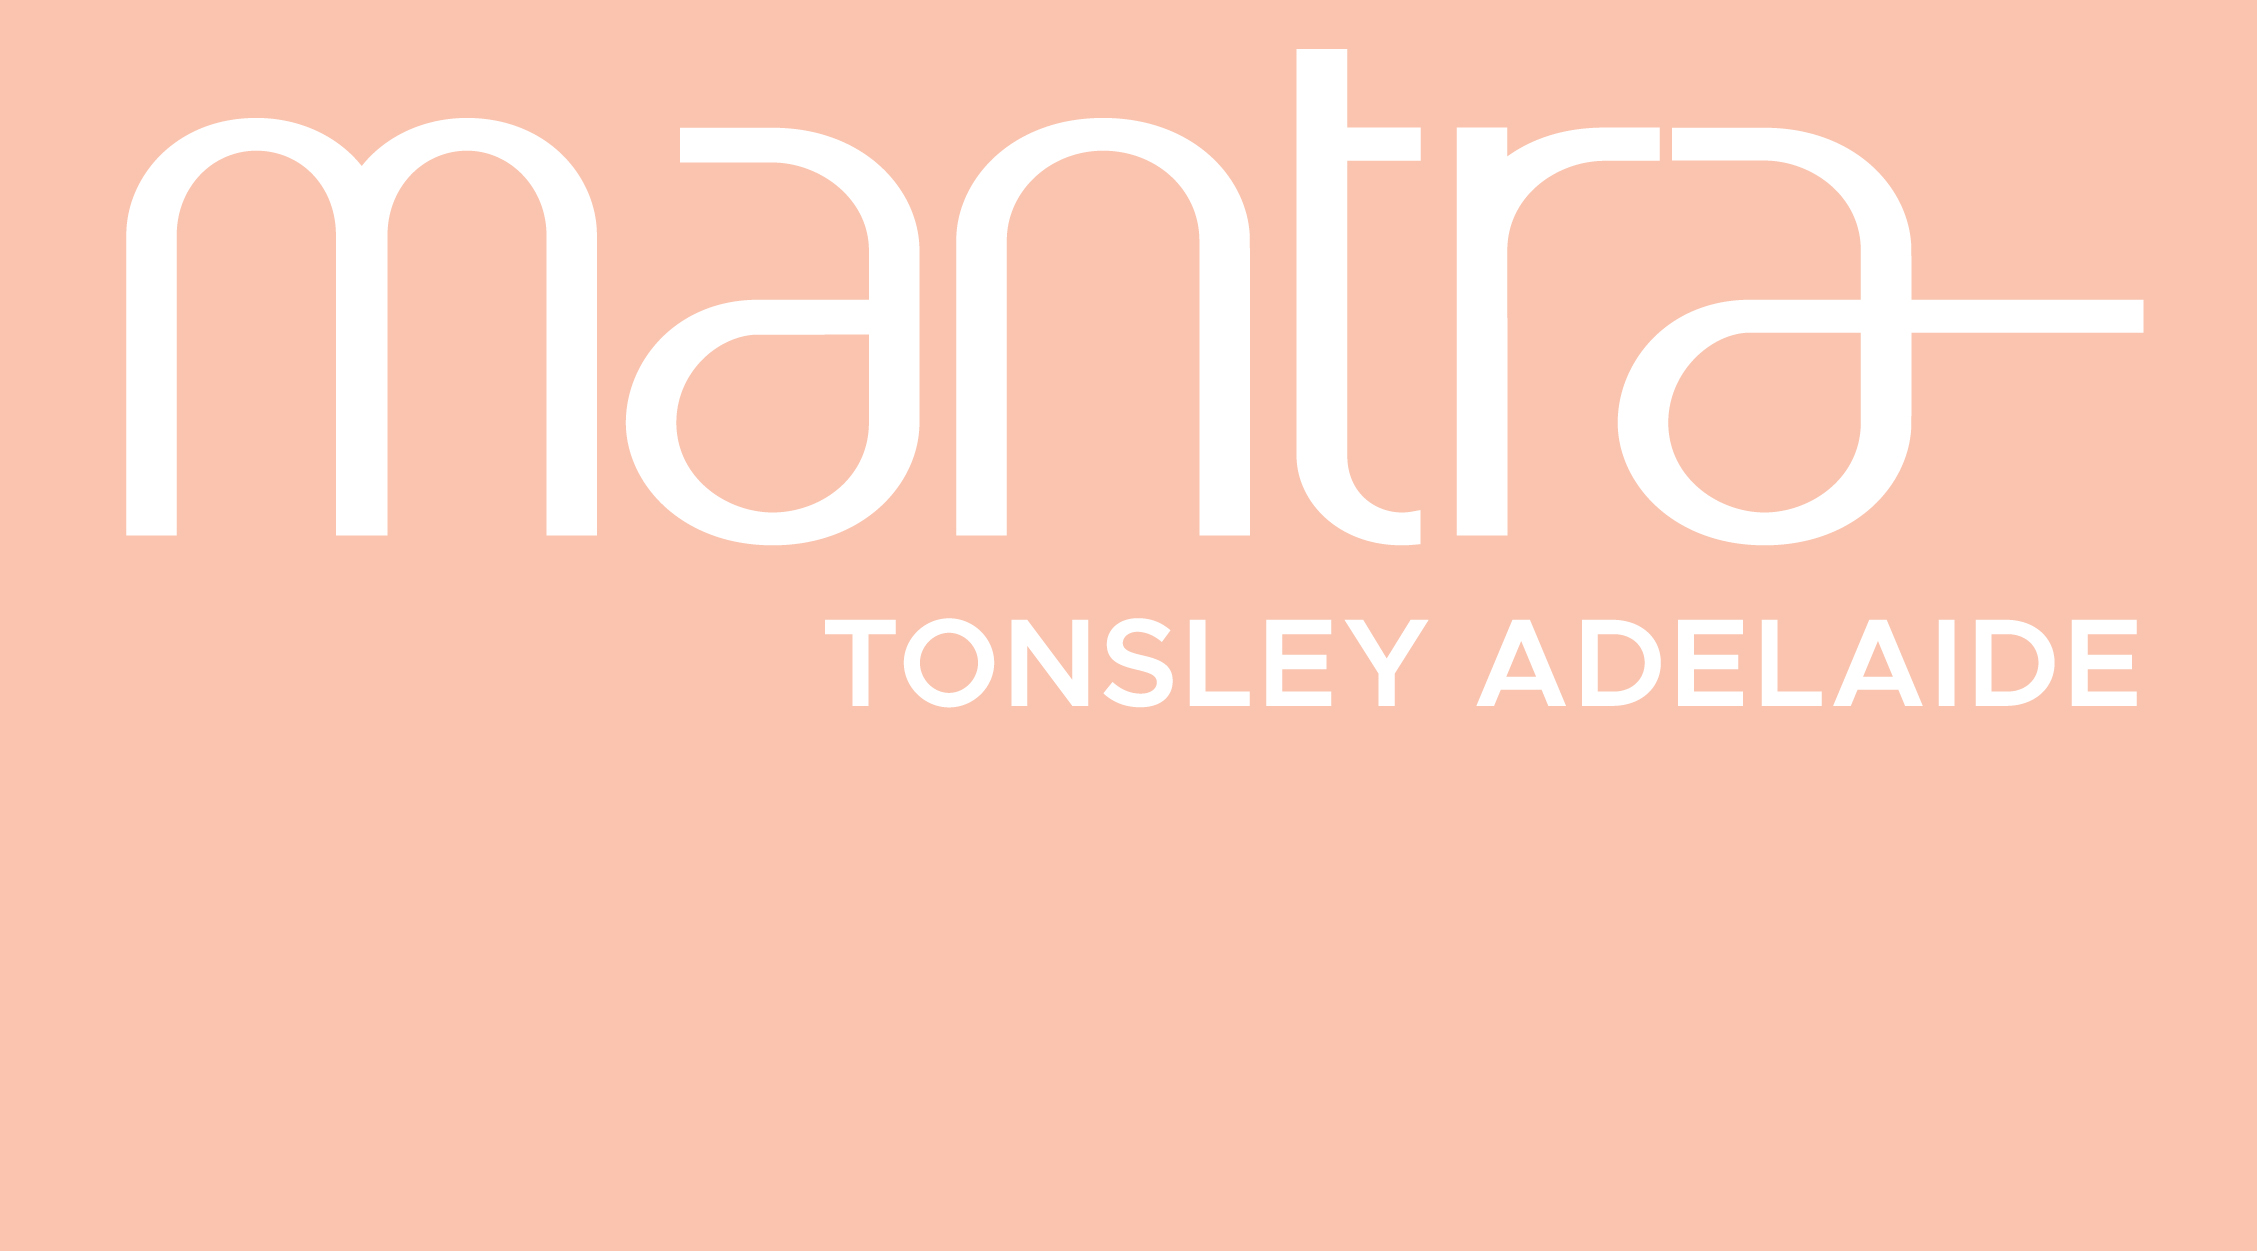 Mantra Tonsley Adelaide logo